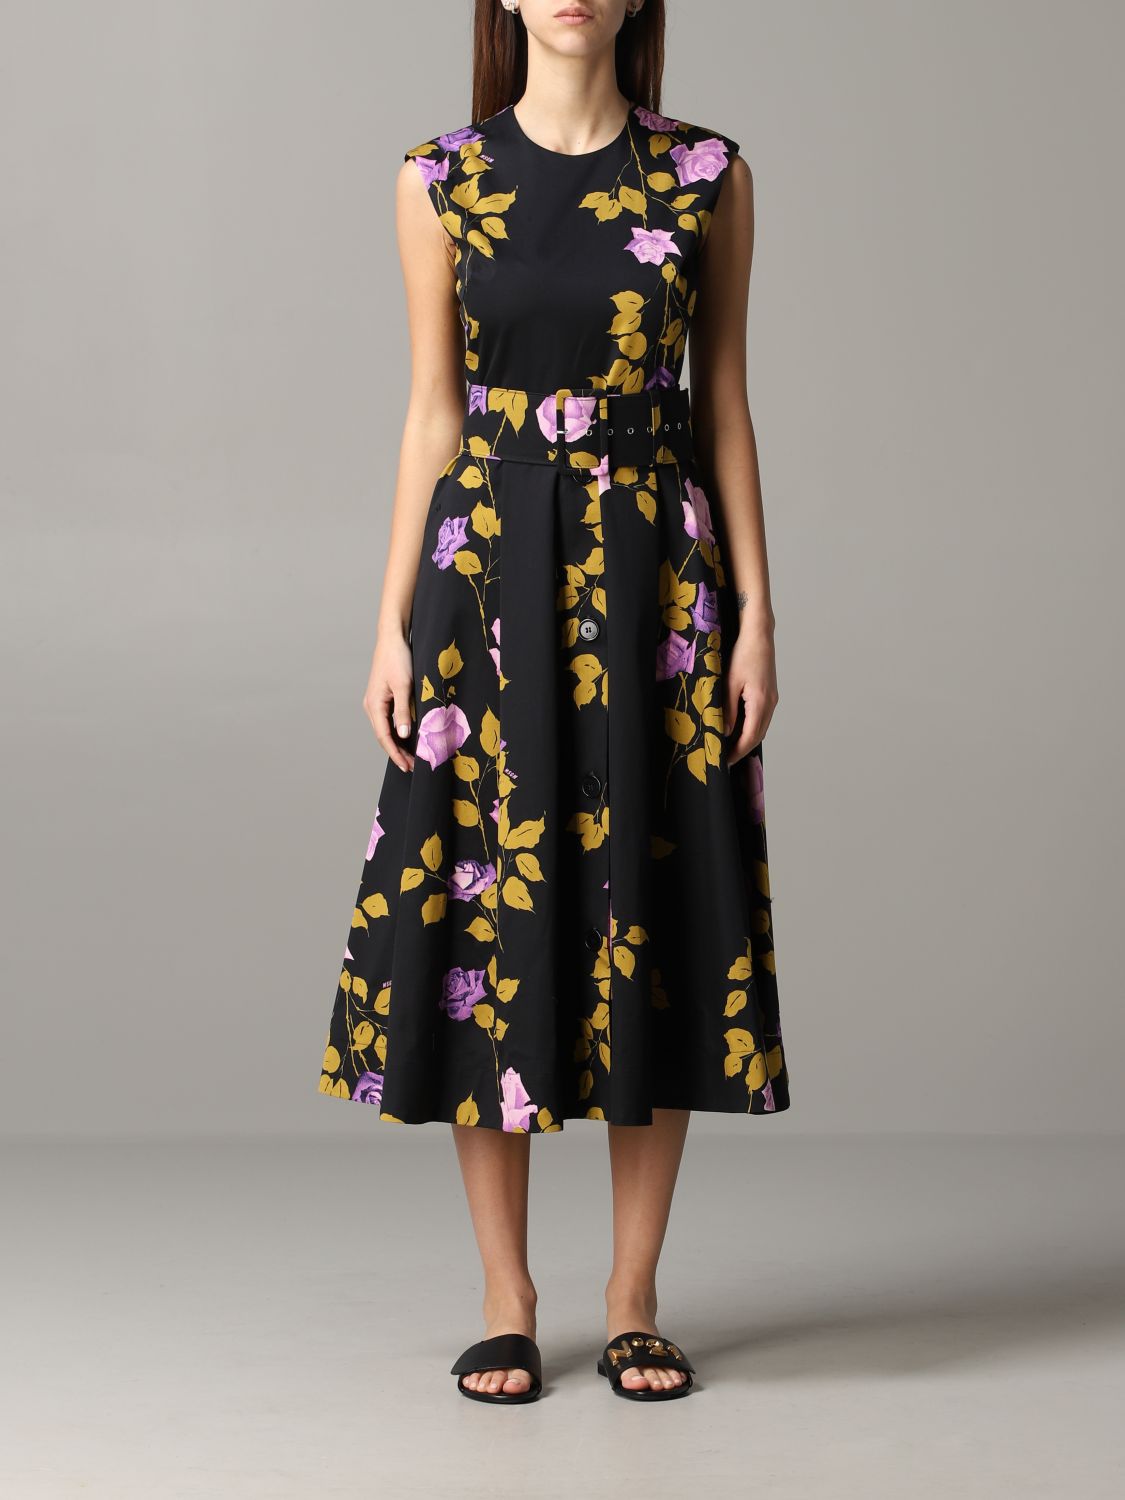 Msgm Outlet: floral patterned dress ...